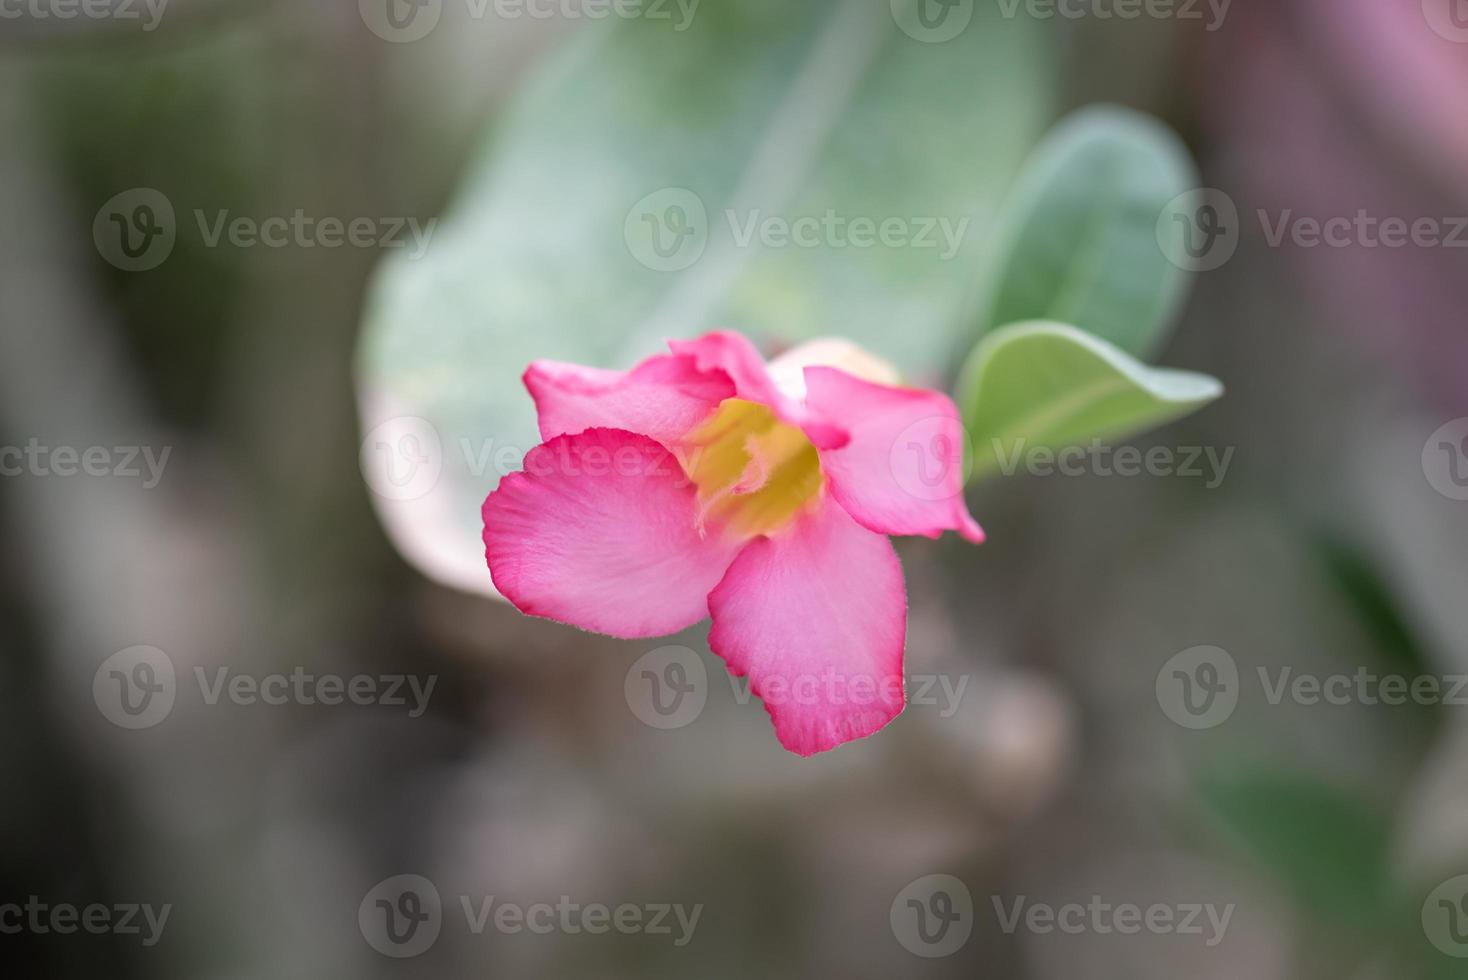 petites et belles plantes succulentes de diverses variétés photo